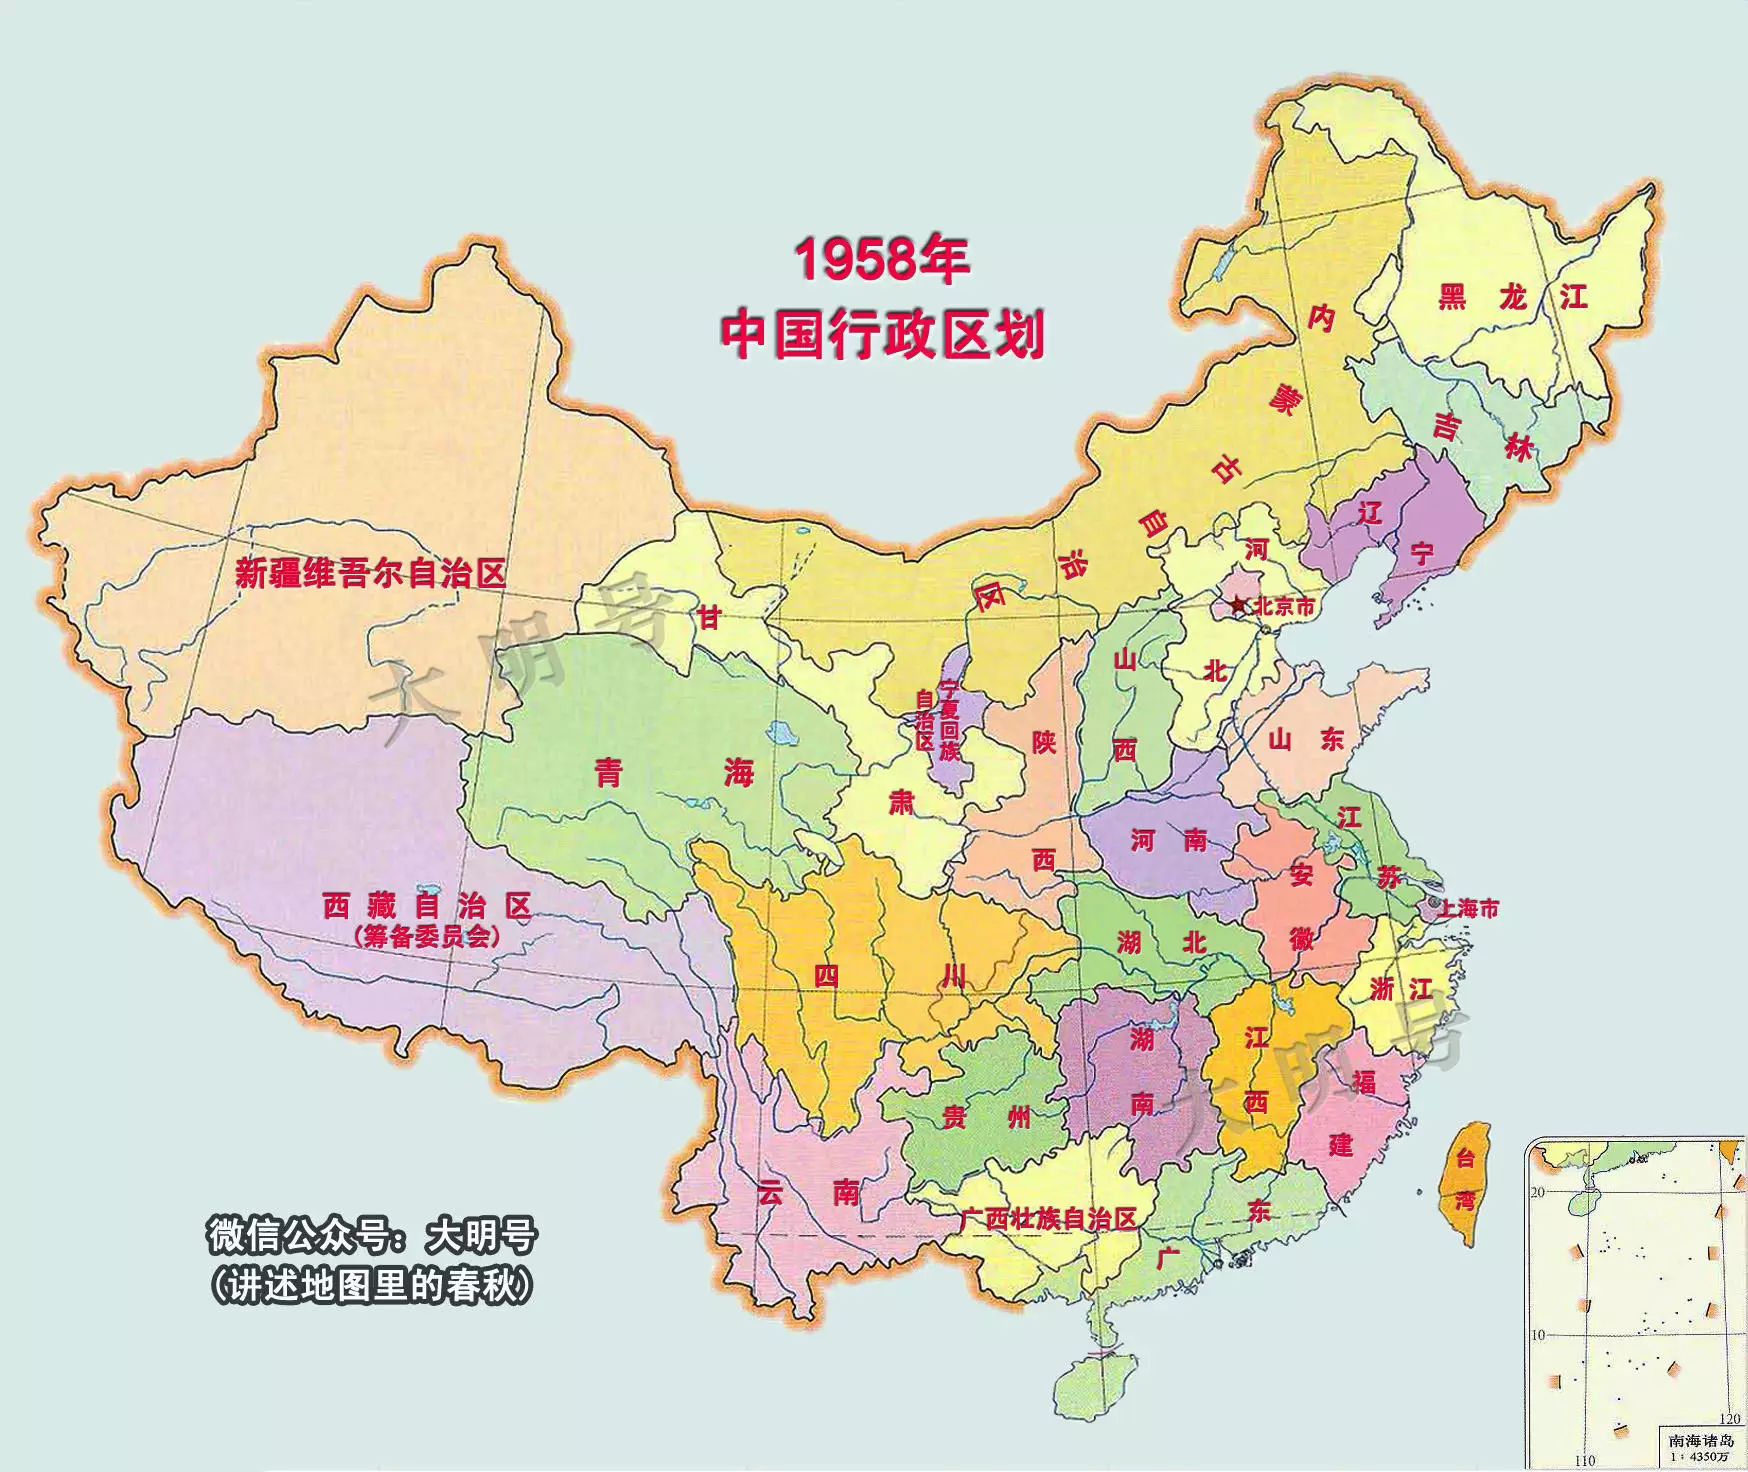 1951-1999年中国行政区划的变迁 | 新中国以来,裁撤消失的17个省级